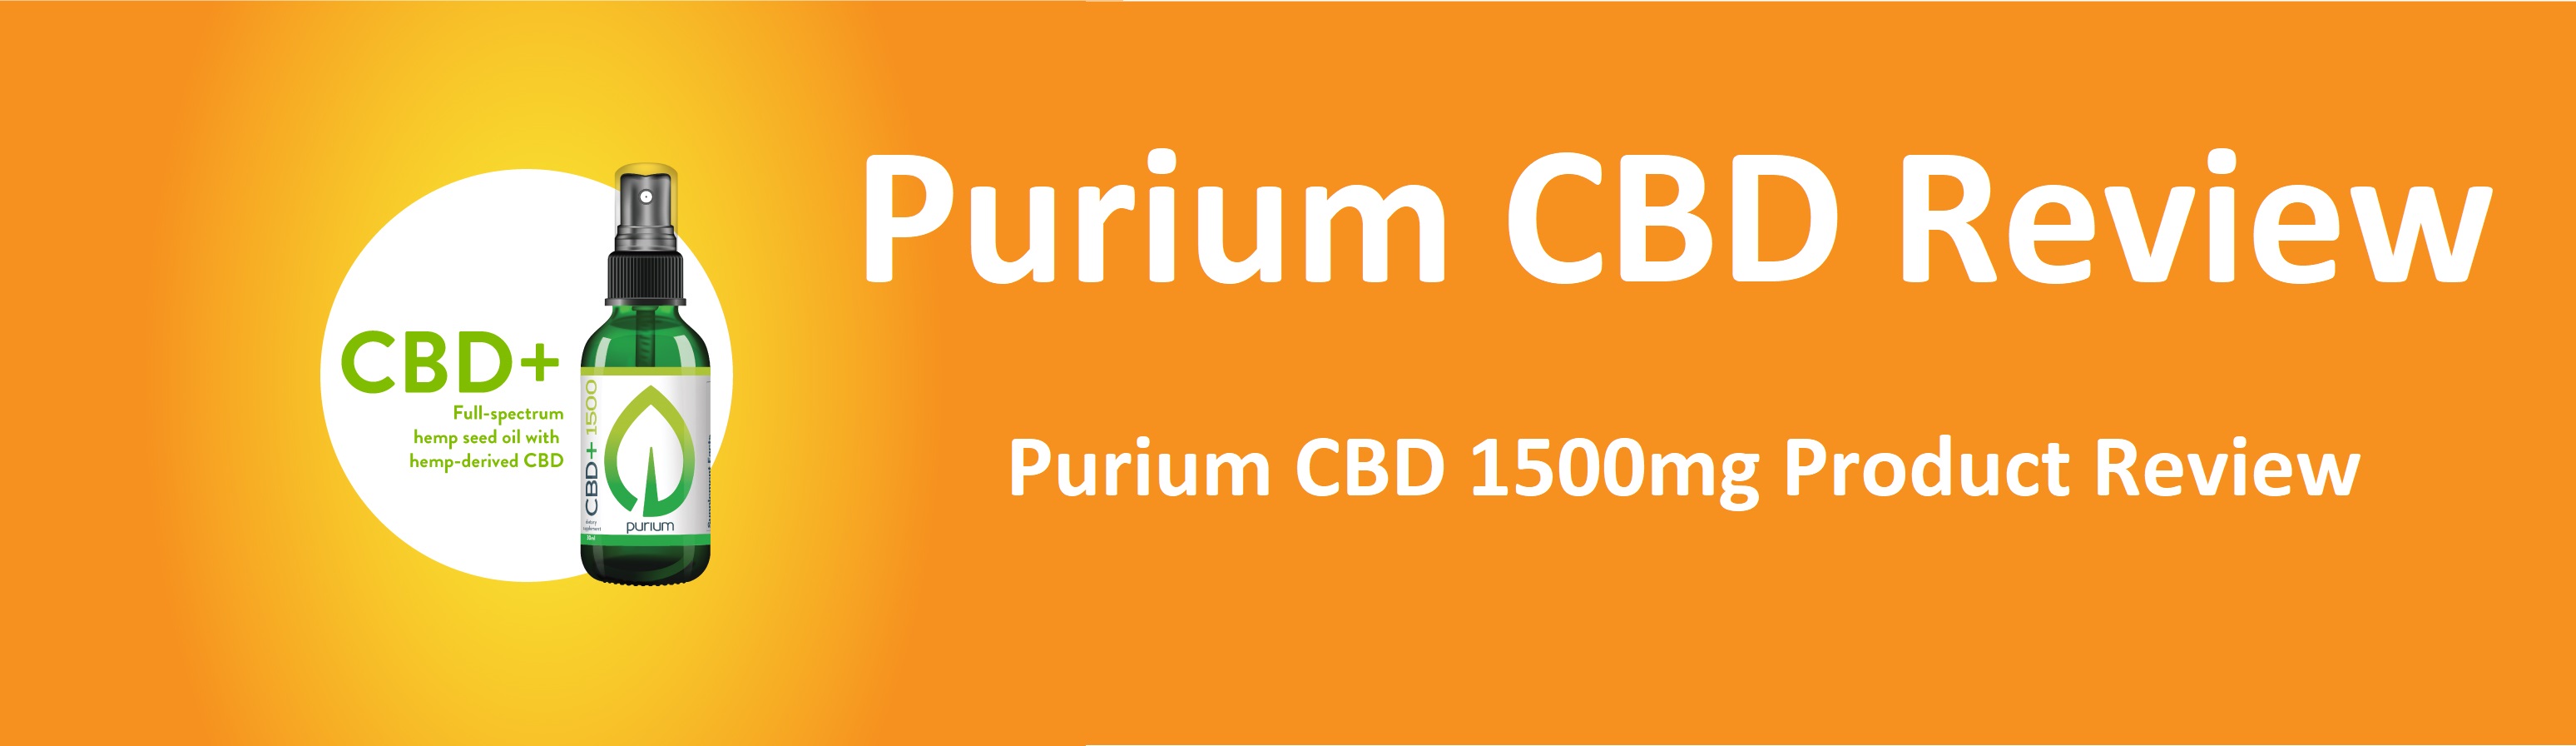 Purium CBD review